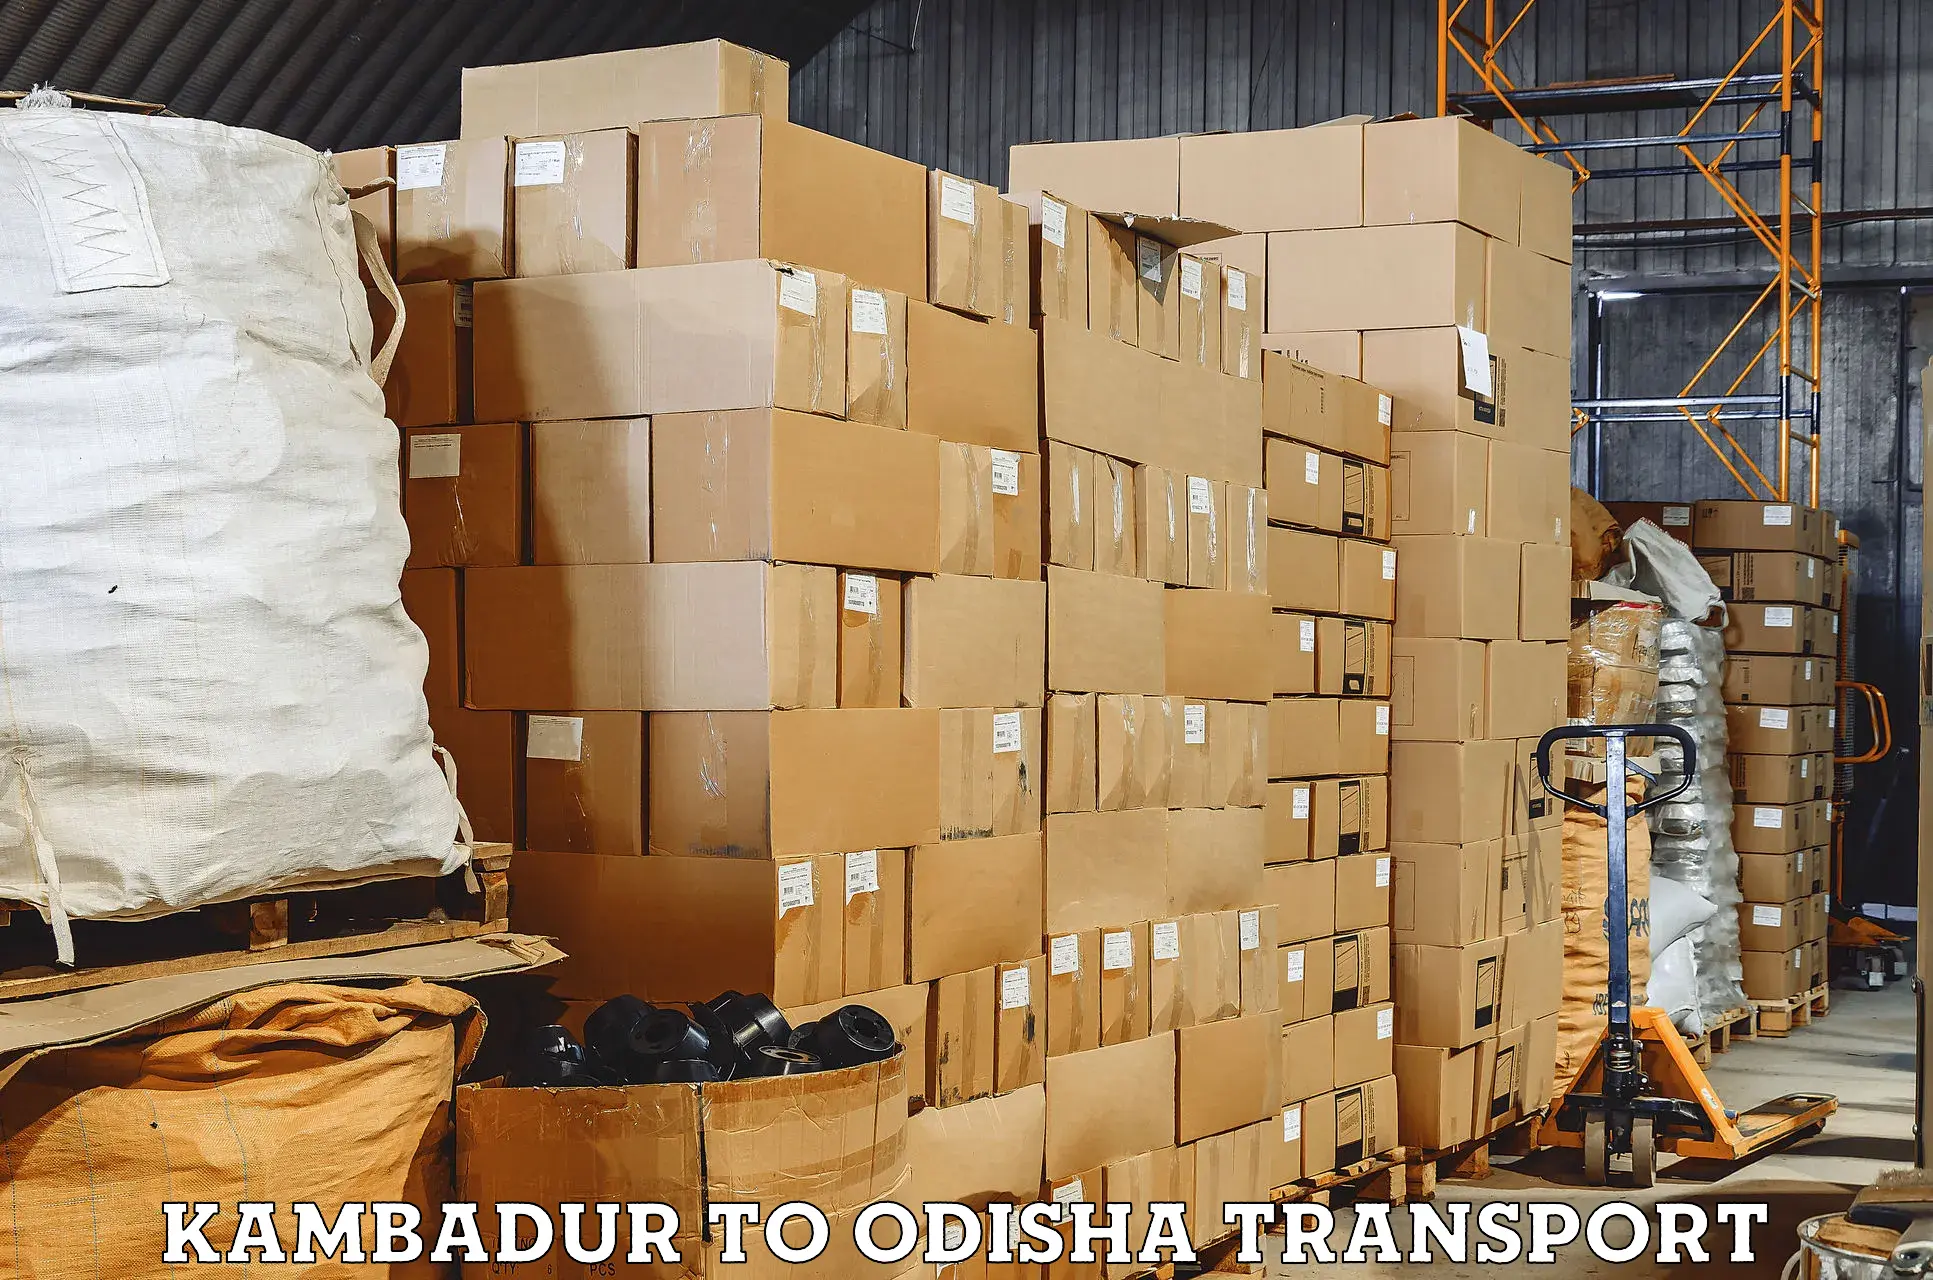 Online transport booking Kambadur to Duburi